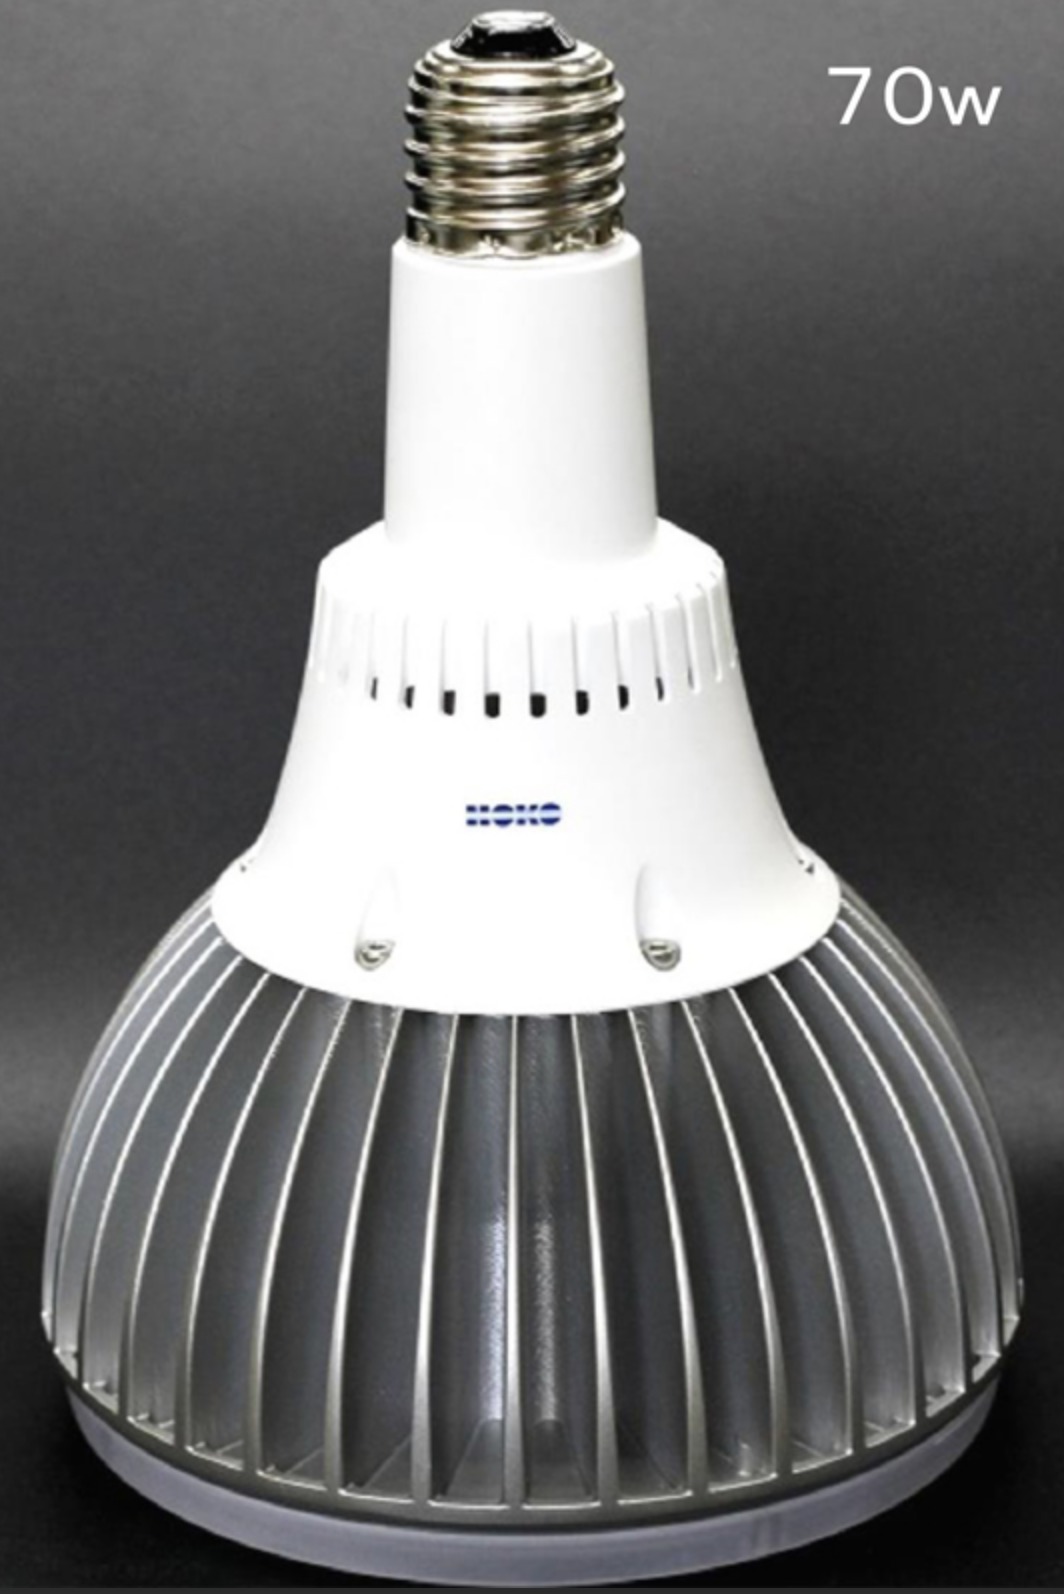 水銀灯代替LED - 日本ユニバーサル電気株式会社 水銀灯代替LED